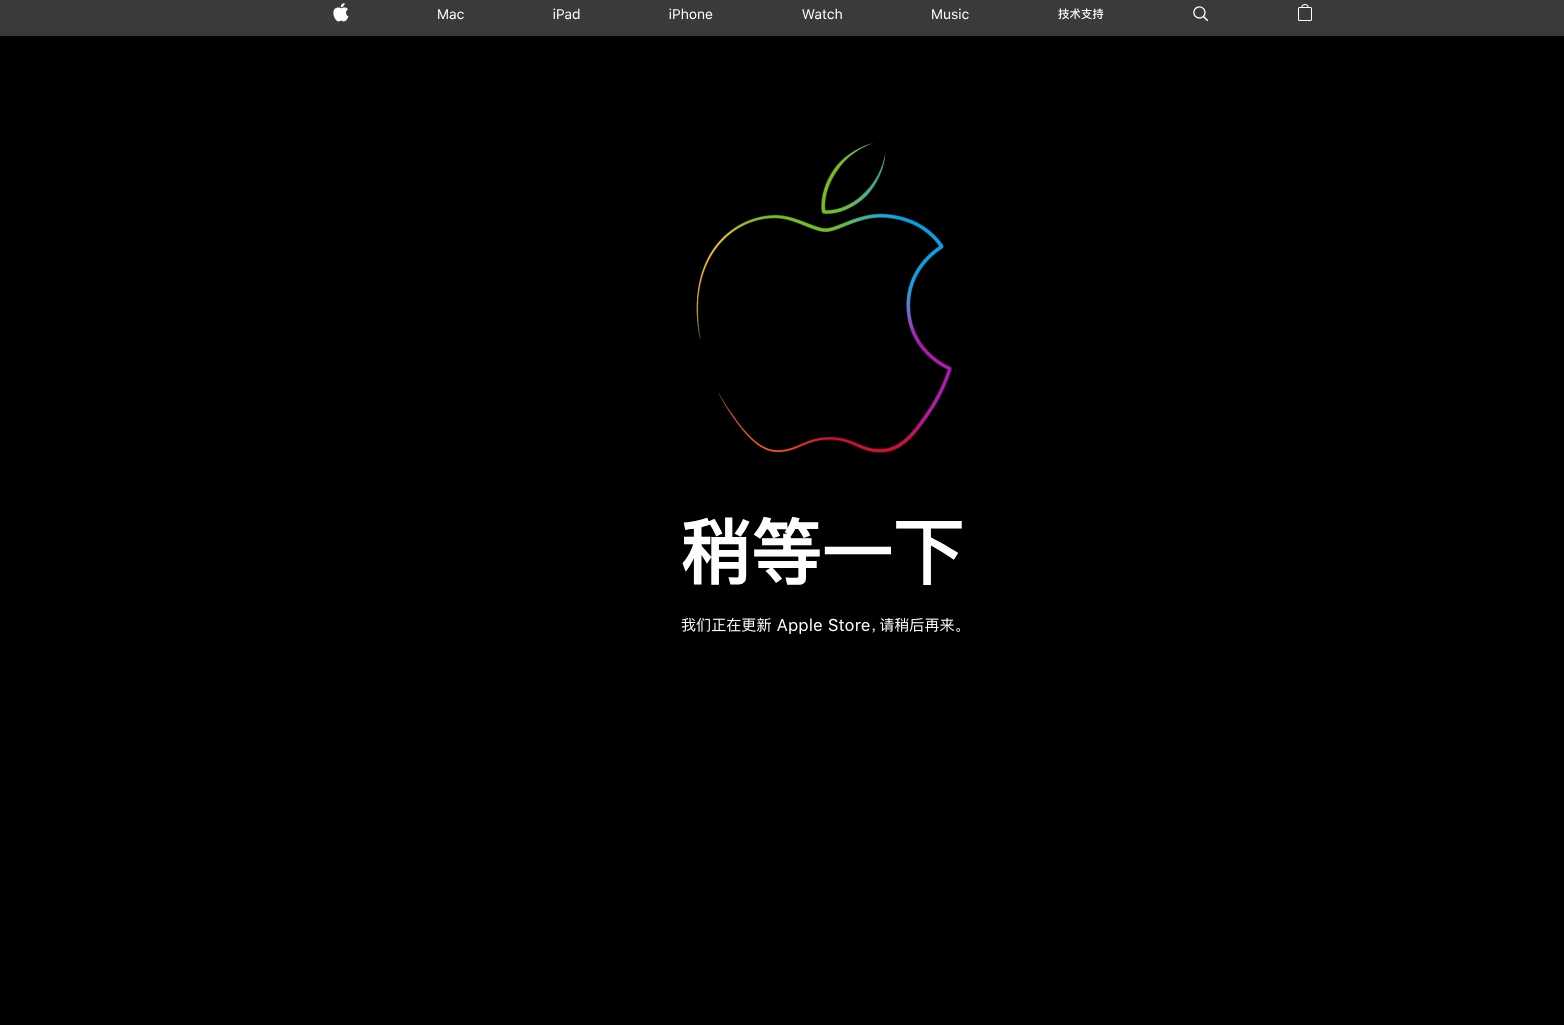 苹果在线商店正在更新 新品或将是iPad、iMac